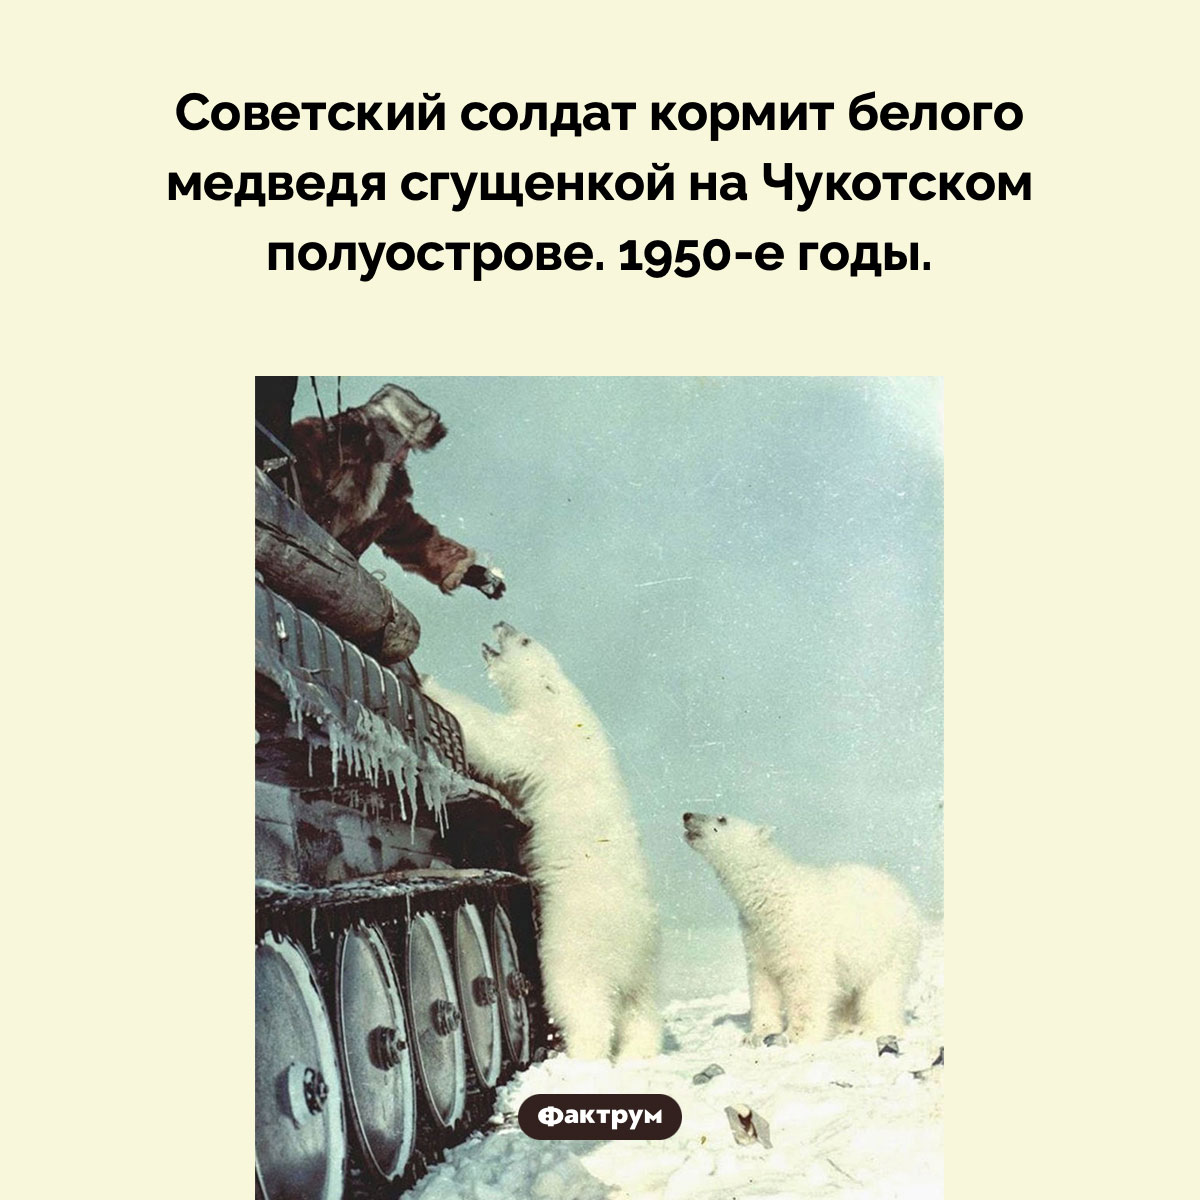 Белый медведь и сгущенка. Советский солдат кормит белого медведя сгущенкой на Чукотском полуострове. 1950-е годы.